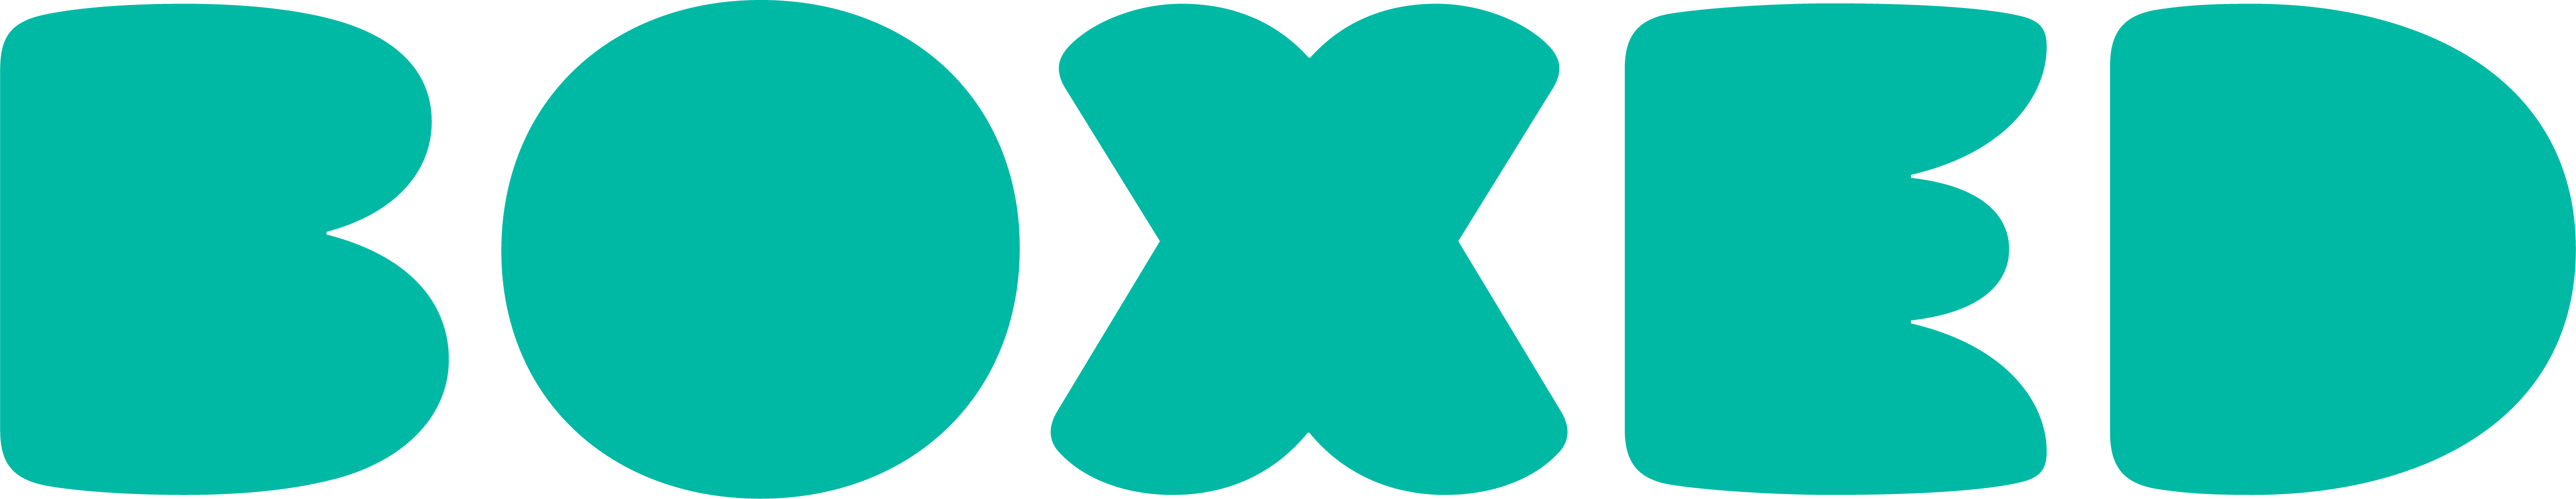 Rgb - Boxed Com Logo (5140x995)